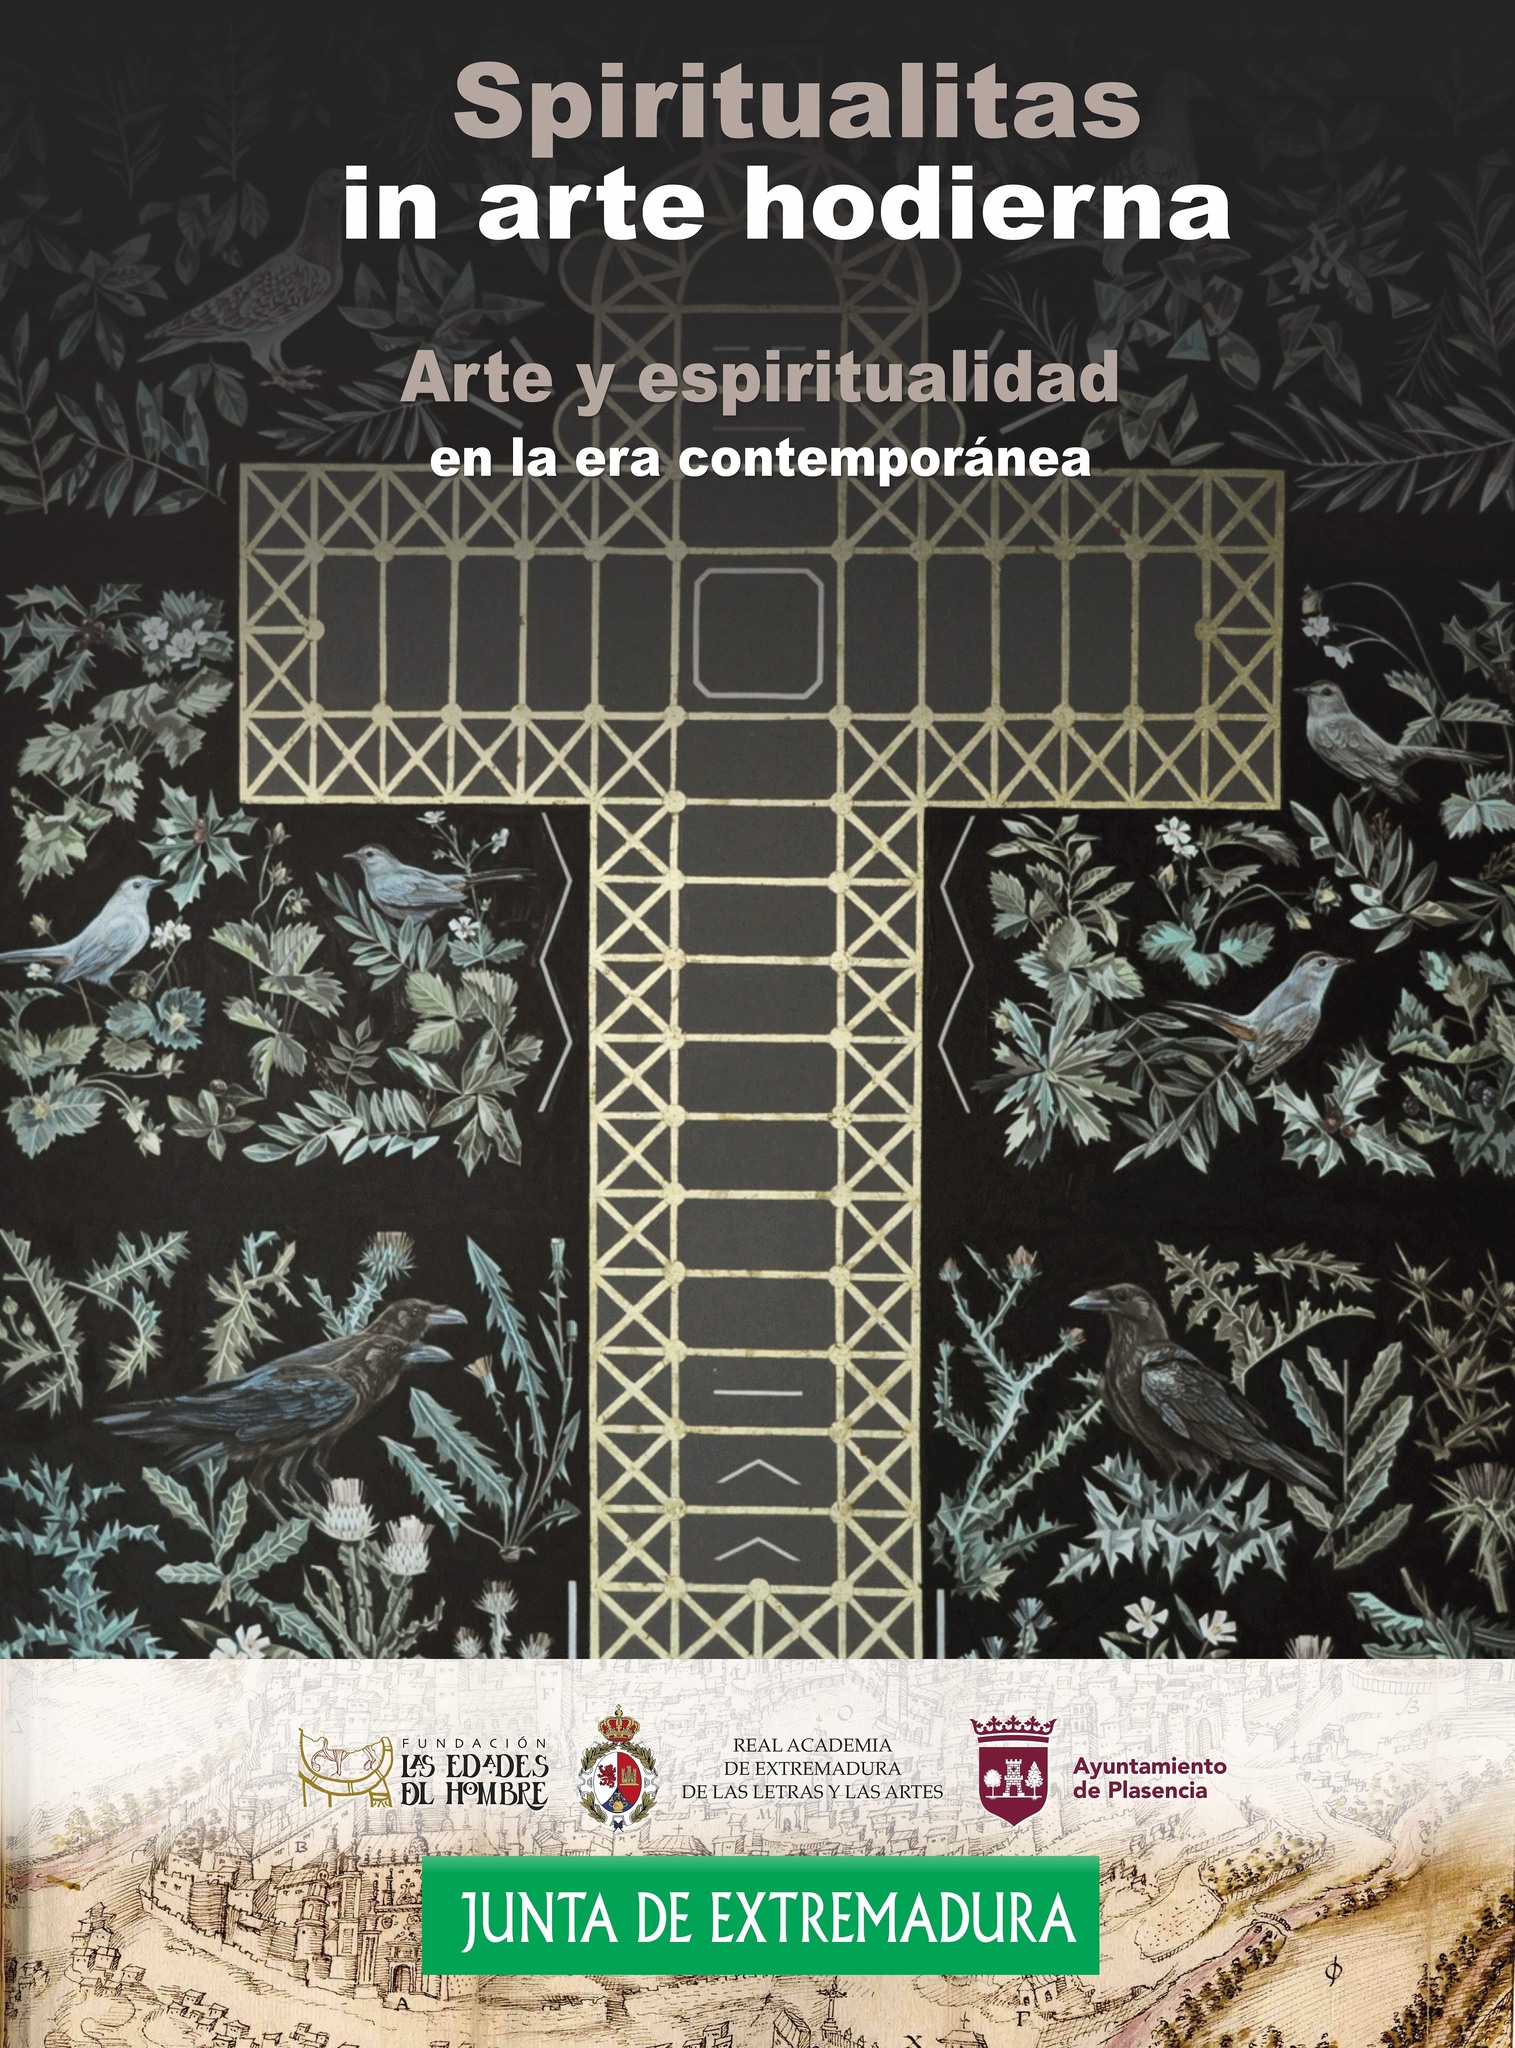 INAUGURACIÓN SPIRITUALITAS IN ARTE HODIERNA - Exposición Arte Contemporáneo